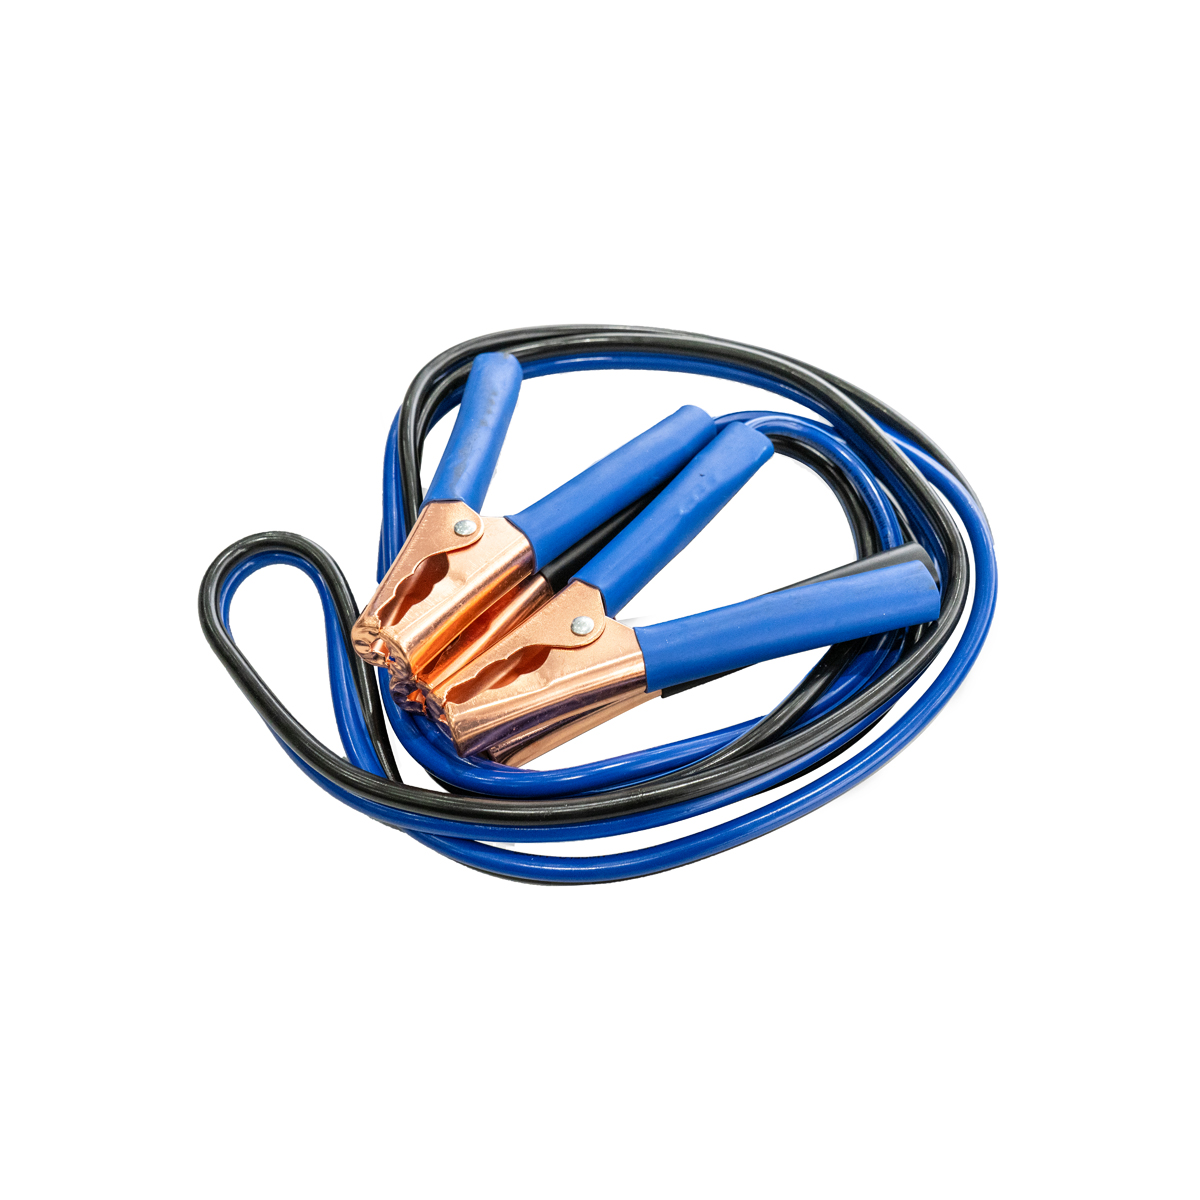 Imagen para Juego de cables para pasar cor riente calibre 10 de 25 m de Grupo Urrea